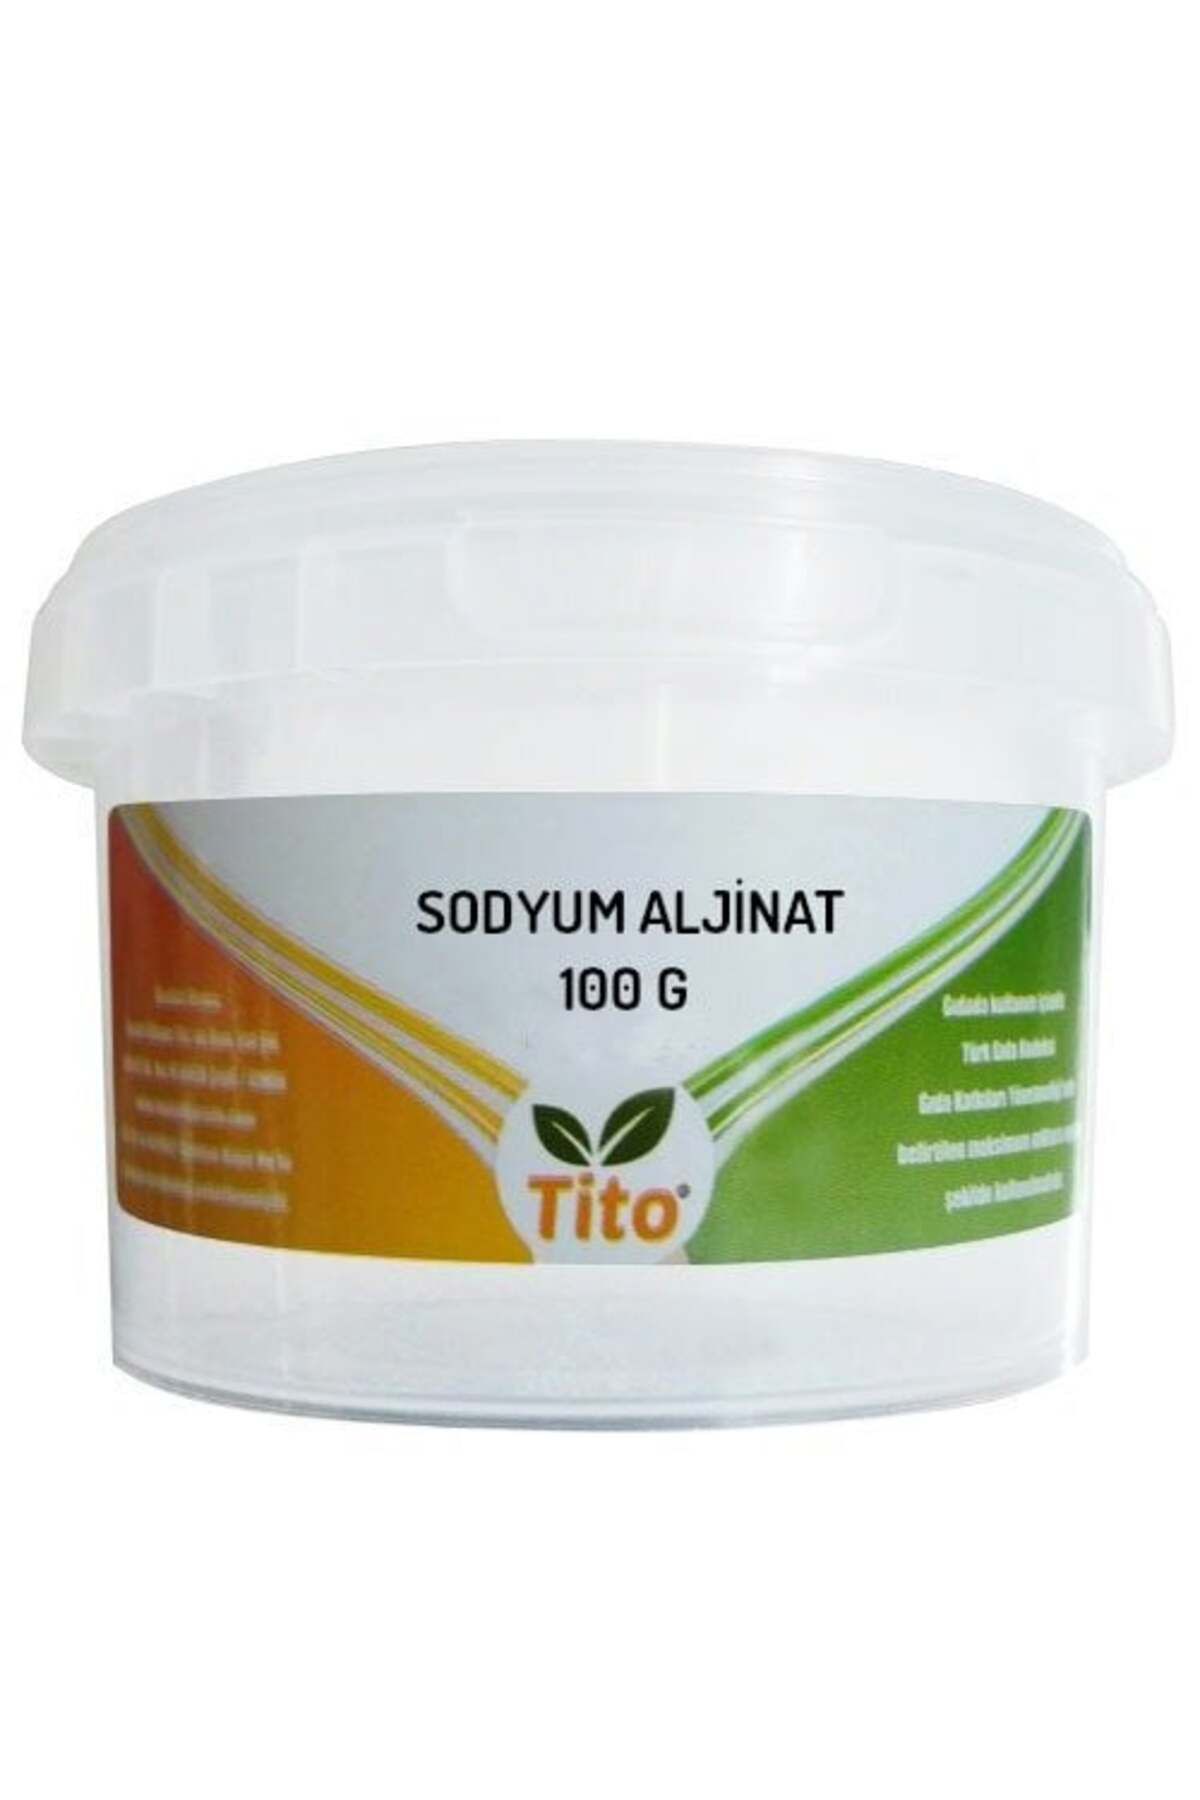 tito Premium Sodyum Aljinat E401 100 G